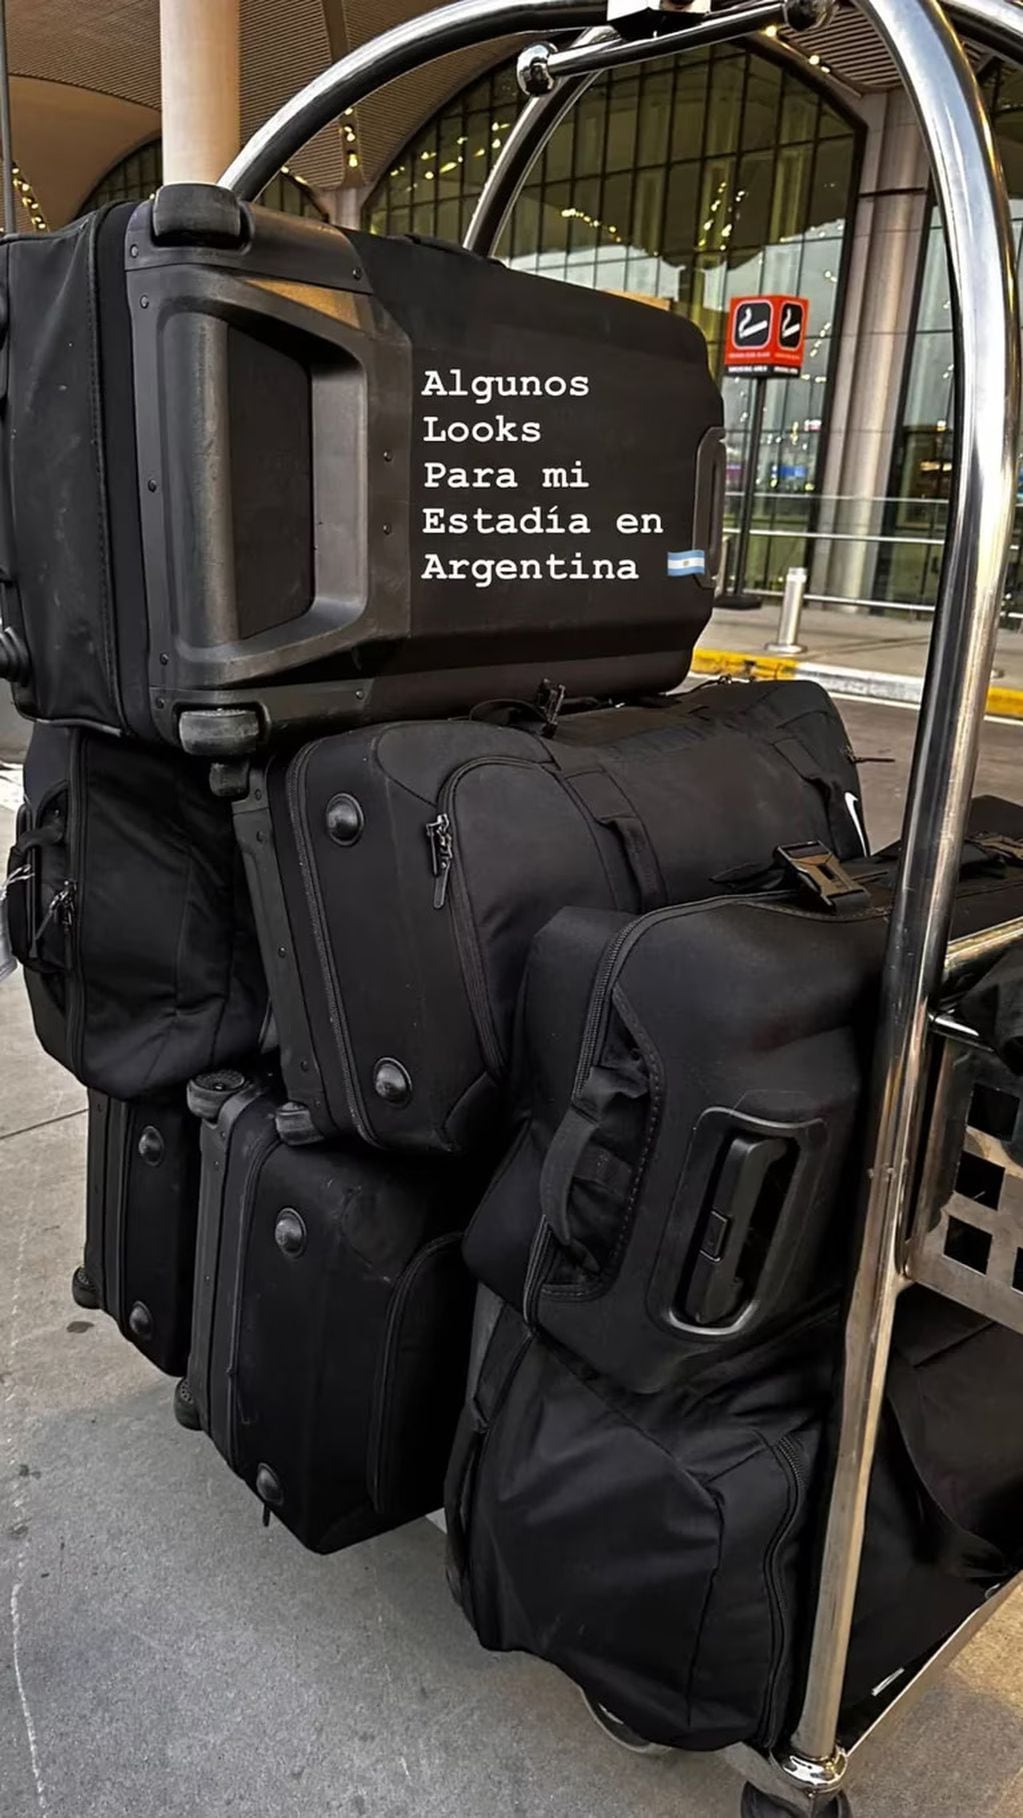 La vuelta de Wanda Nara a Argentina.